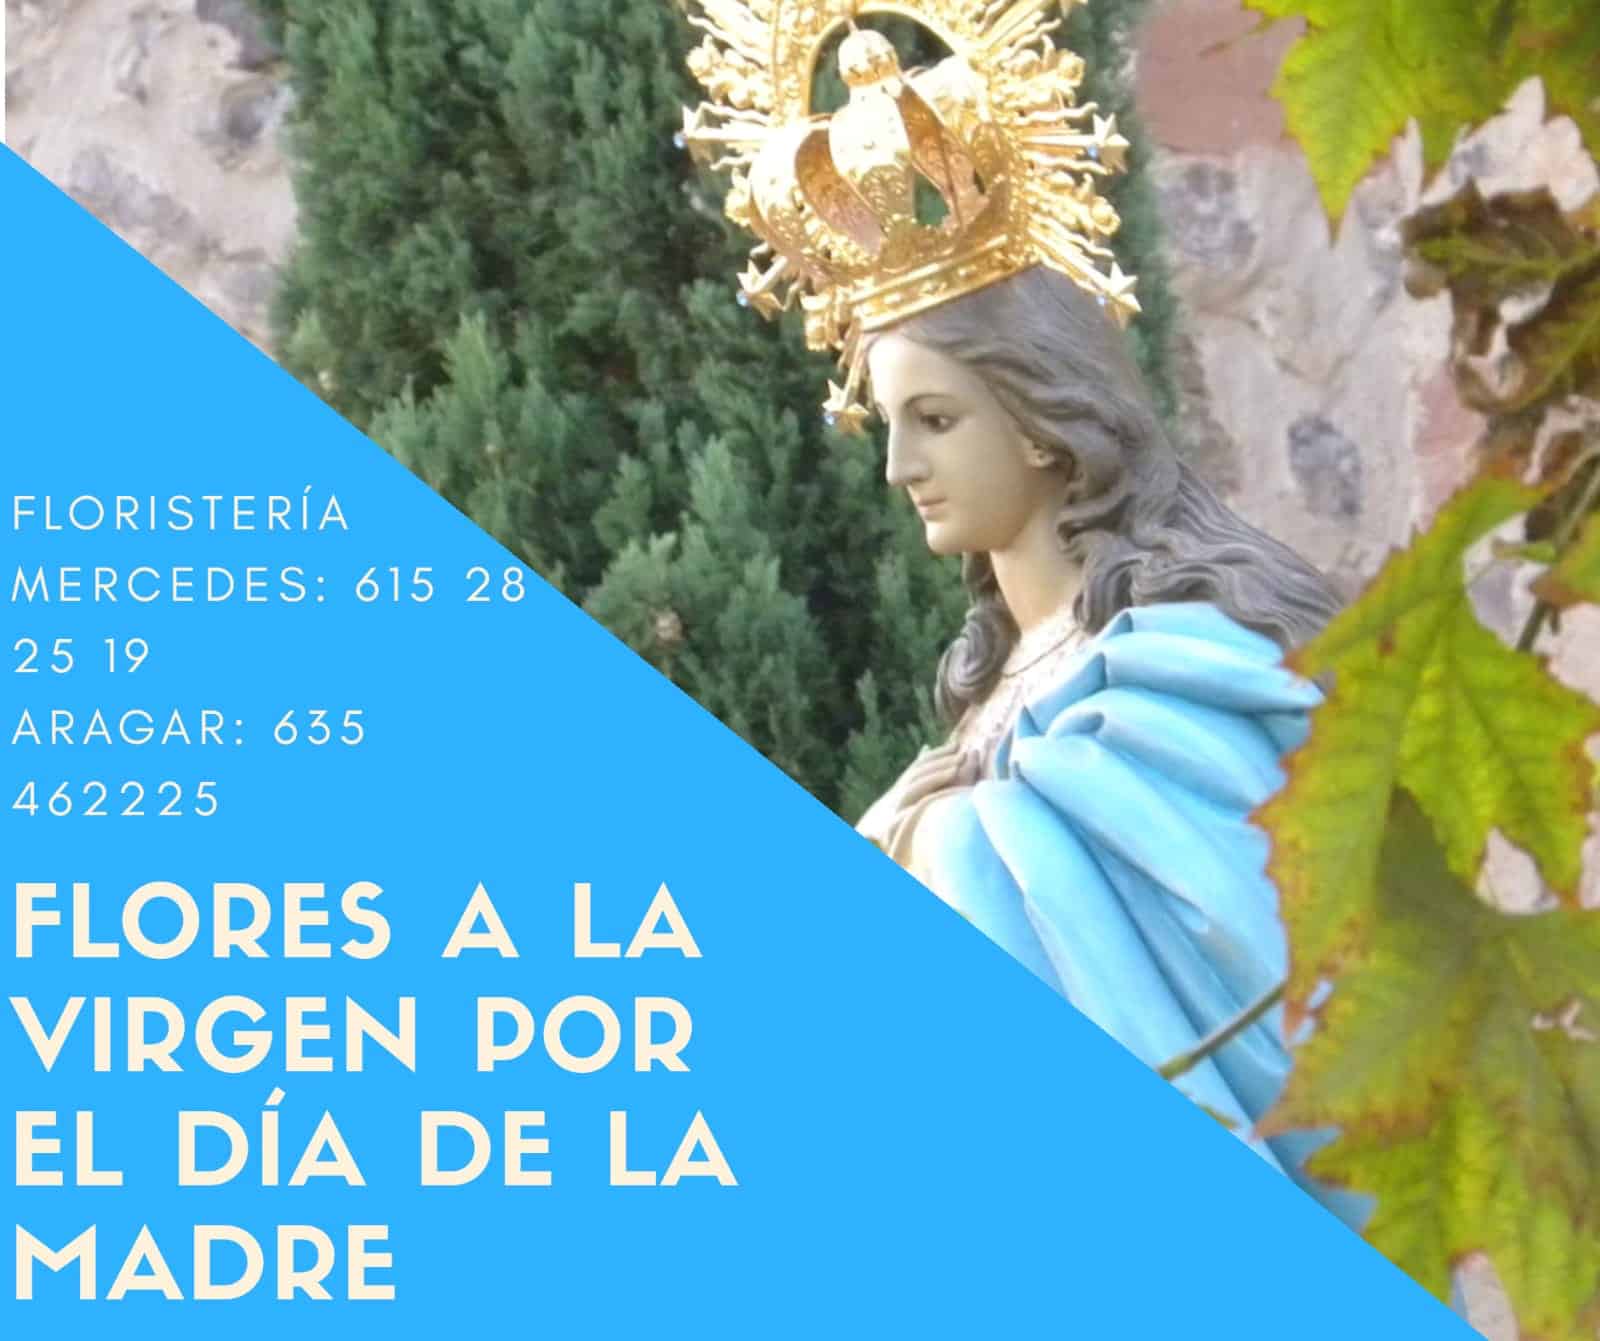 La parroquia Inmaculada Concepción inicia un mes de mayo dedicado a María 15